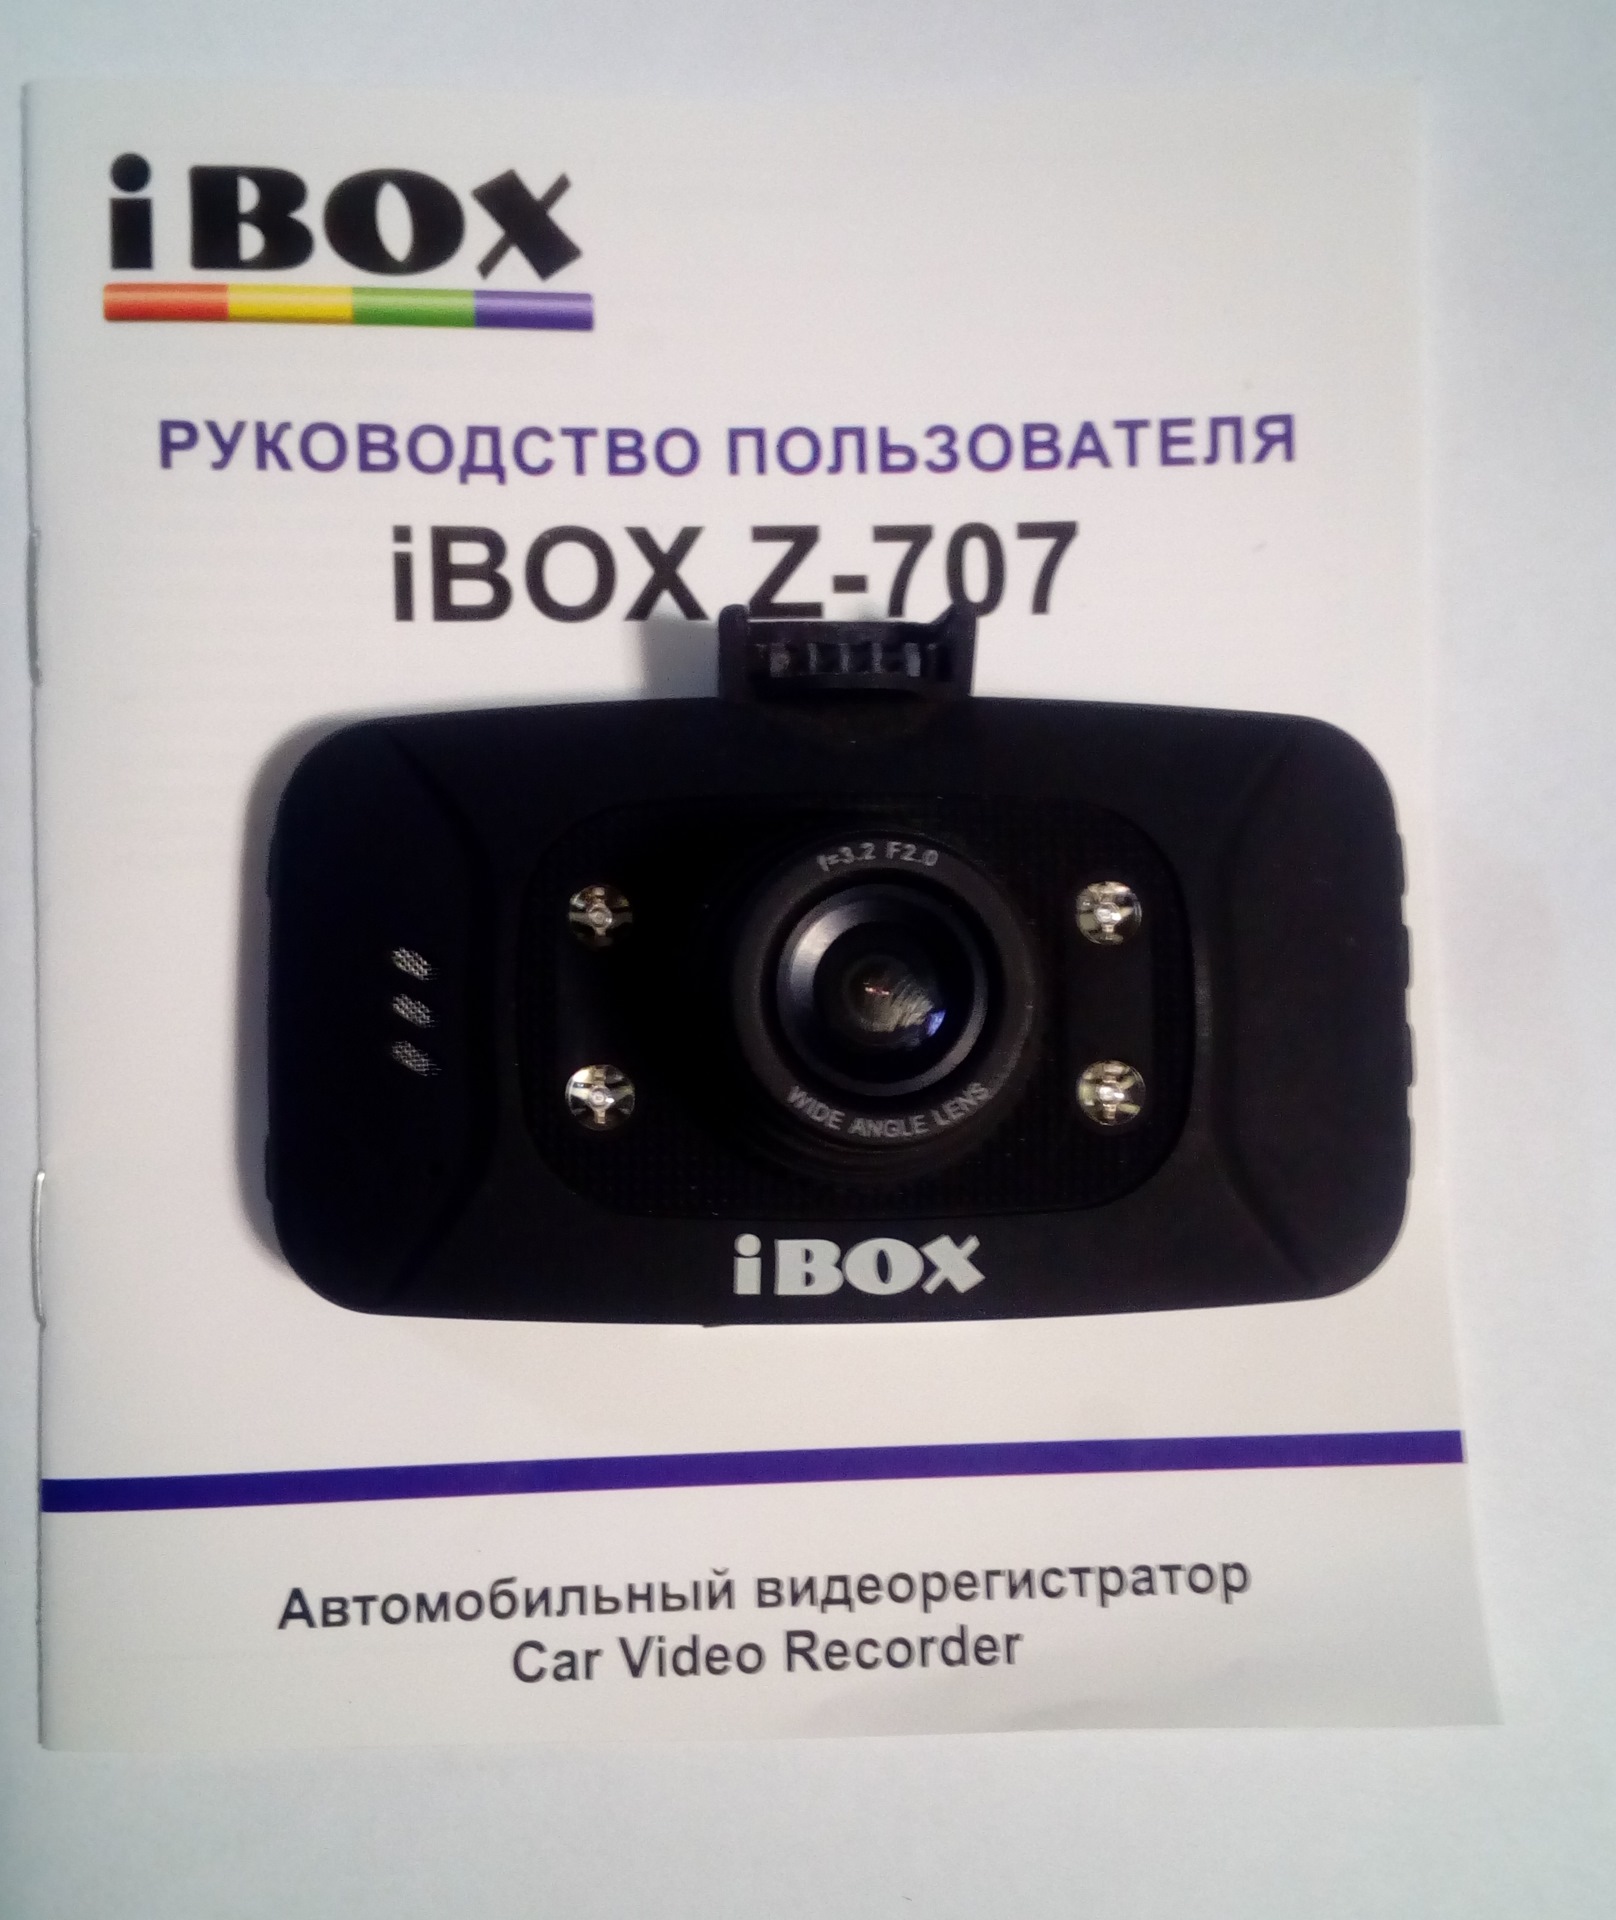 Ibox сайт производителя. Регистратор IBOX Z-707. IBOX регистратор 2013 года выпуска z 707. Видеорегистратор IBOX Z-970. IBOX Регистраторы 2011 года.